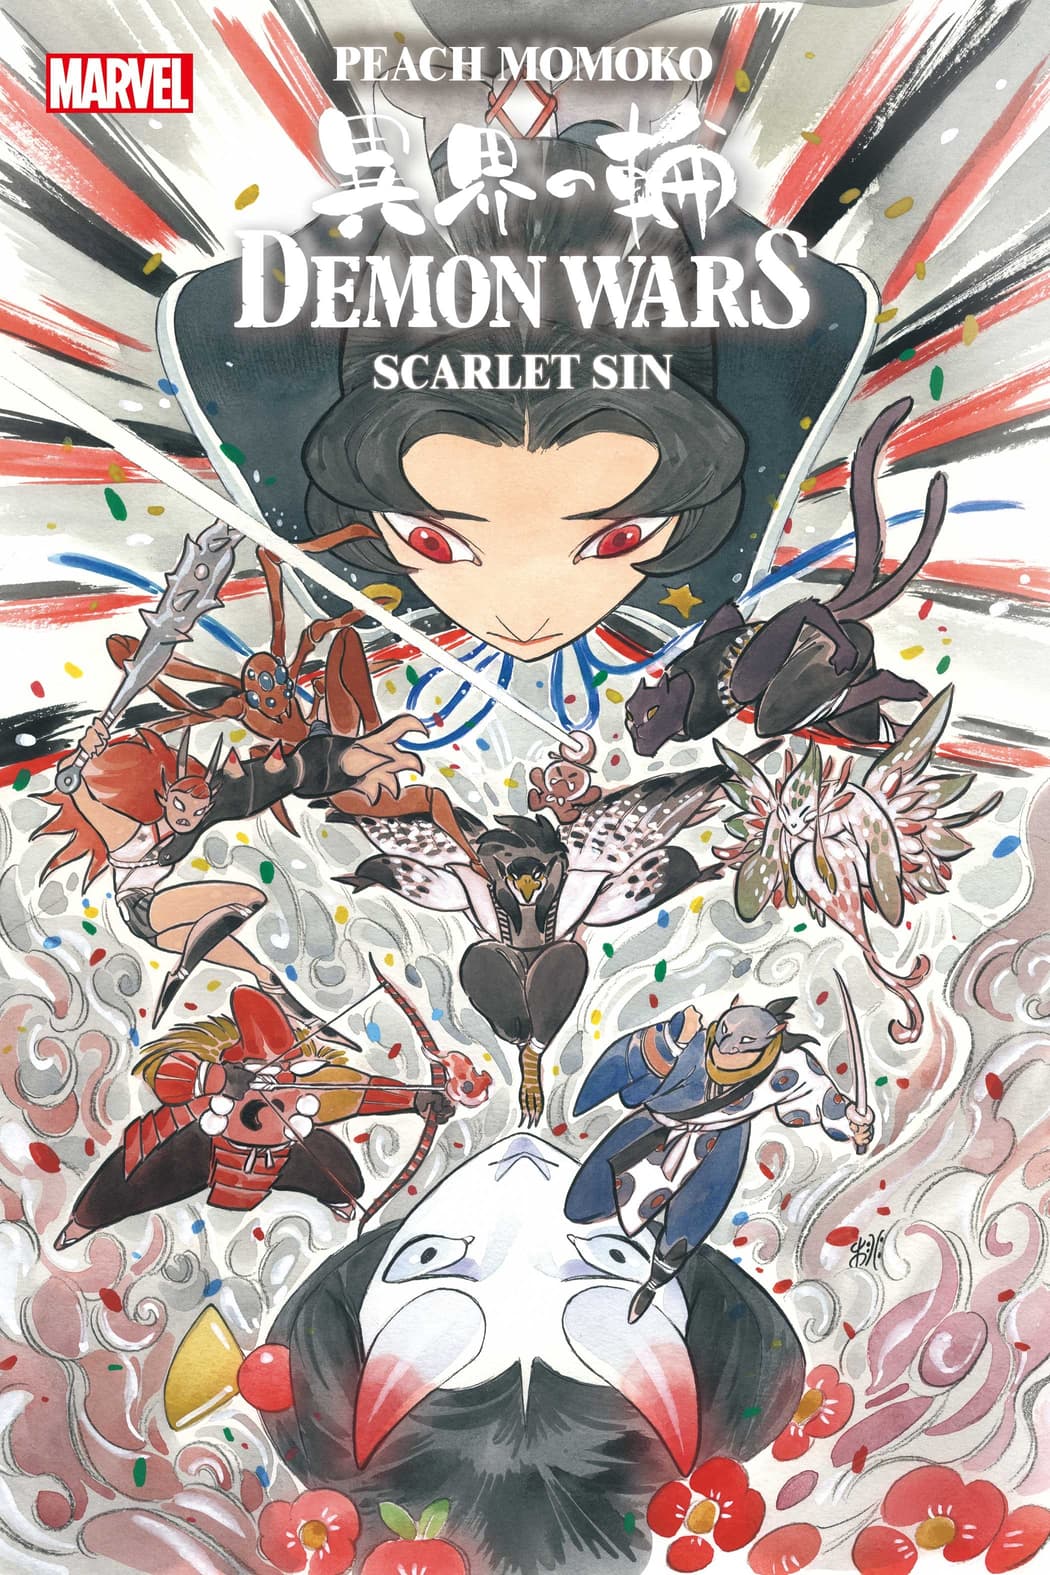 DEMON WARS: SCARLET SIN #1 main cover by Peach Momoko